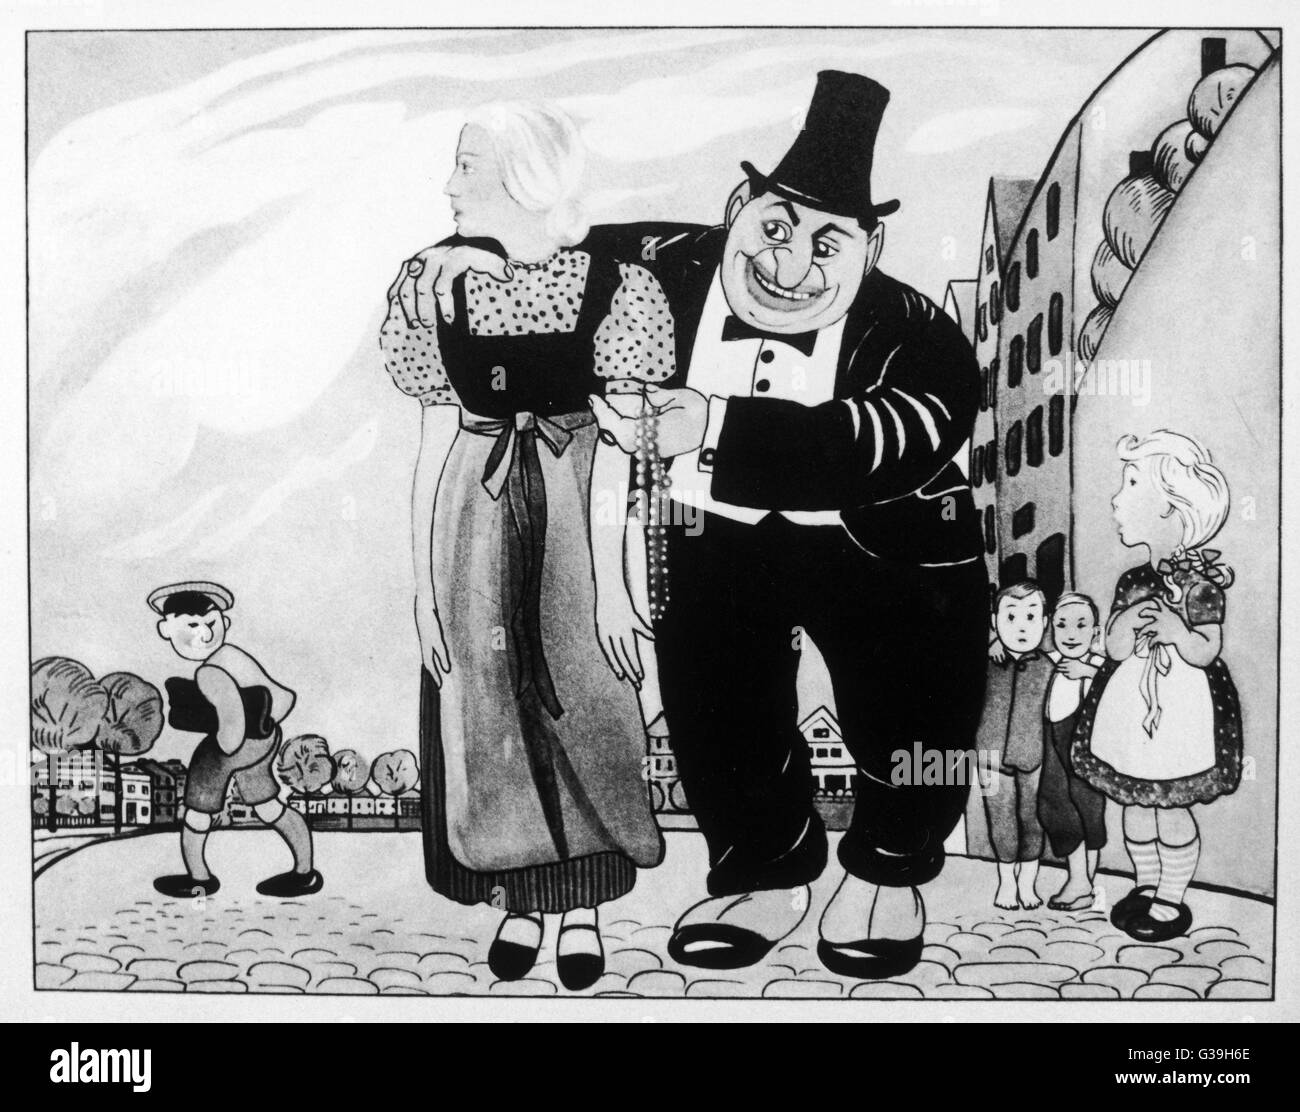 Libro dei bambini mostra un "ricco ebreo" allettanti lontano un puro ariano "ragazza tedesca" da una promessa di perle. Data: 1935 Foto Stock